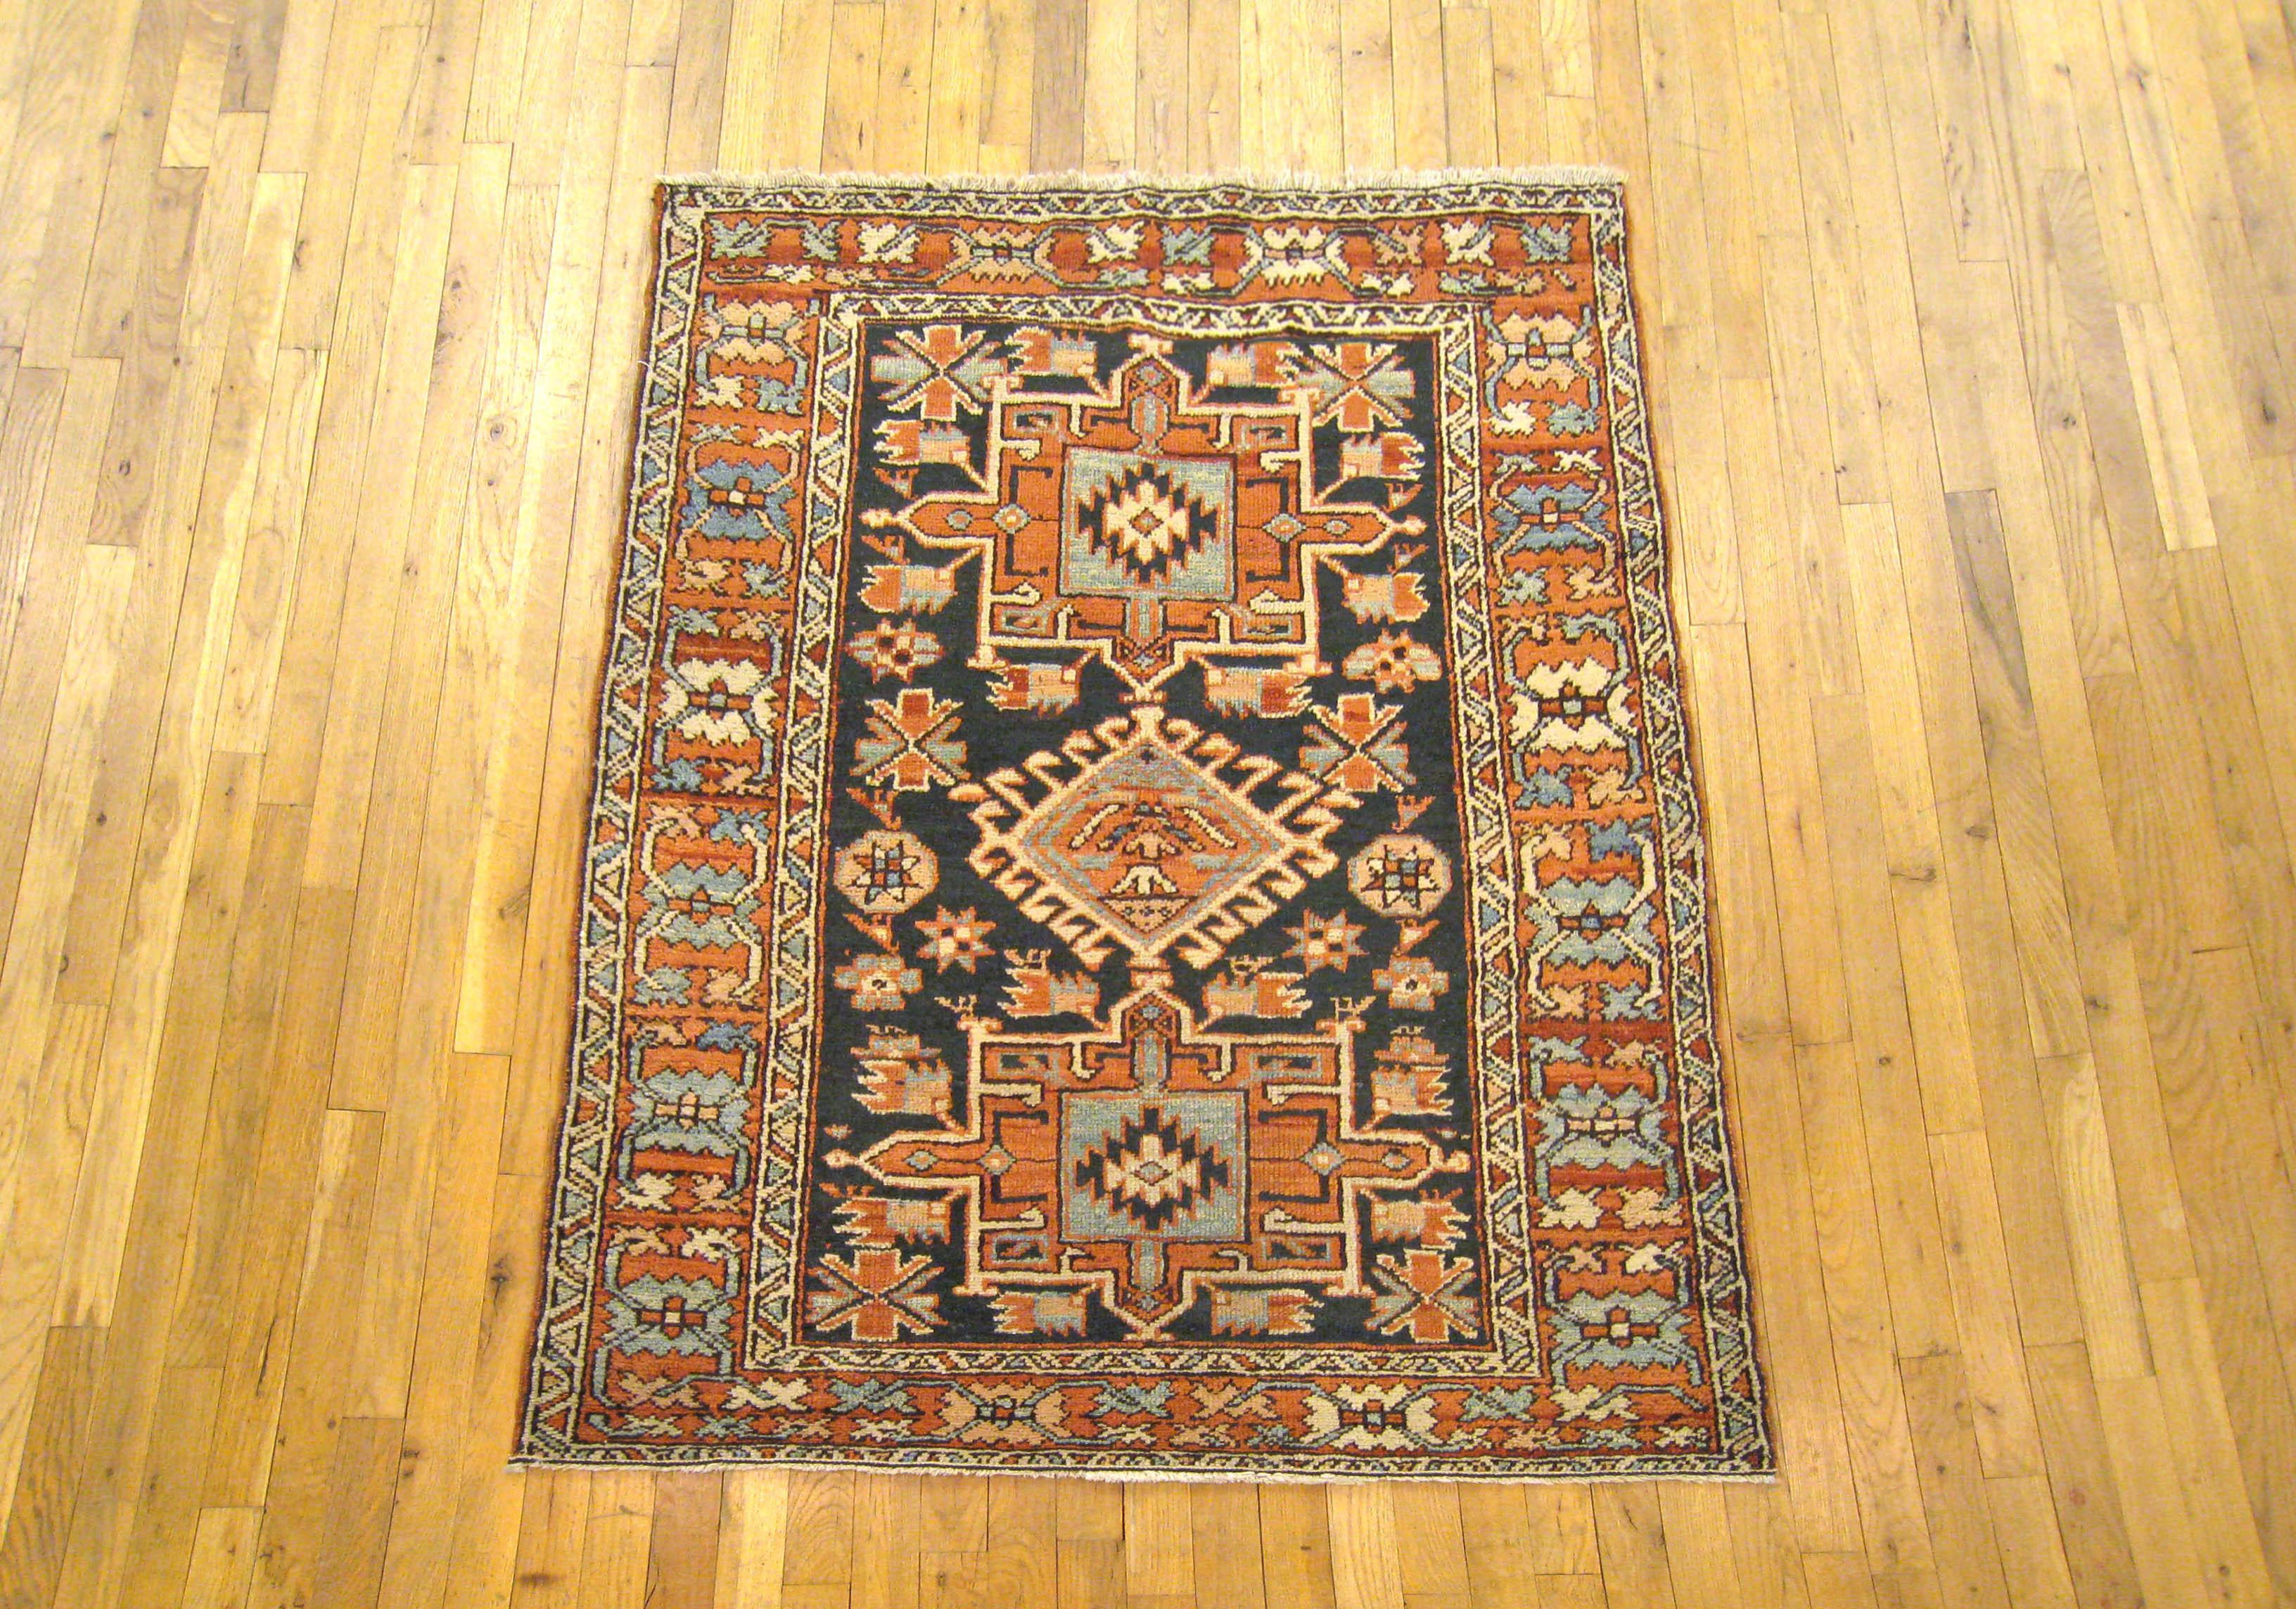 Un ancien tapis oriental persan Heriz Karaja, vers 1920, de dimensions 4'2 x 3'7. Ce beau tapis en laine noué à la main présente une série symétrique de médaillons centraux sur un champ primaire bleu marine. Le champ est entouré d'une bordure